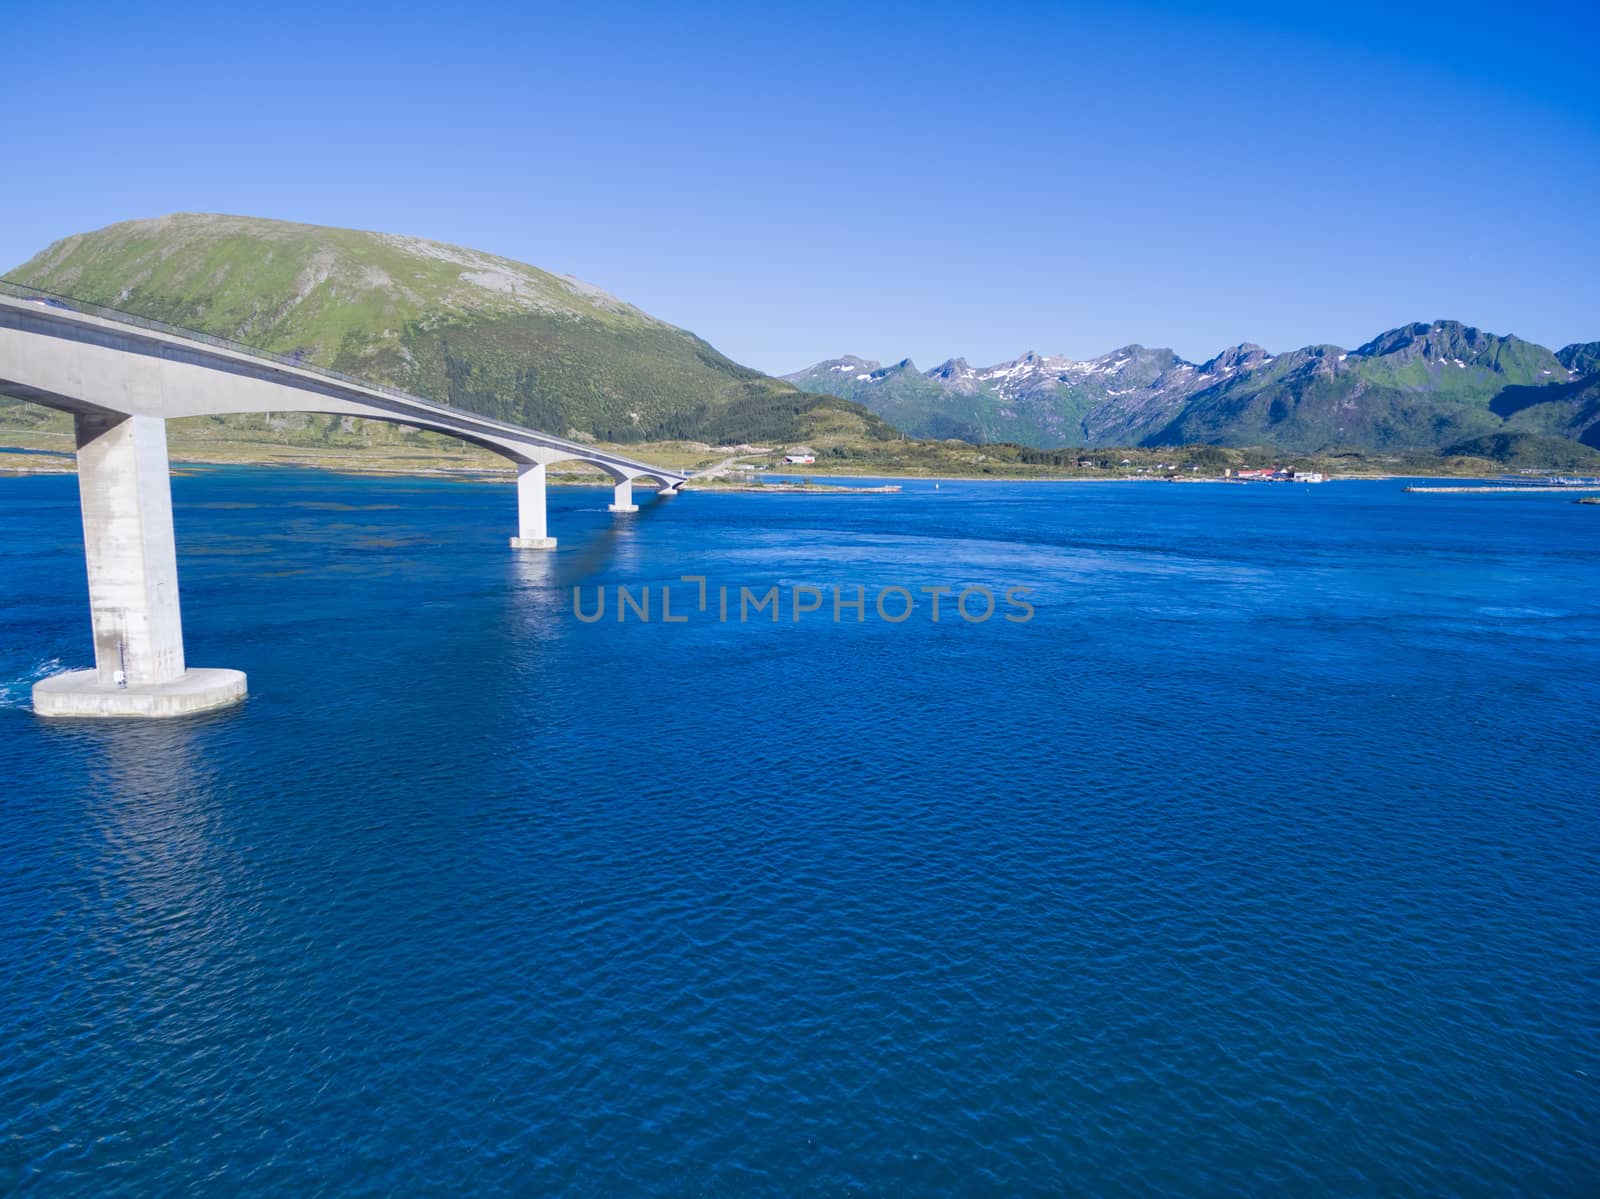 Huge bridge on Lofoten islands in Norway